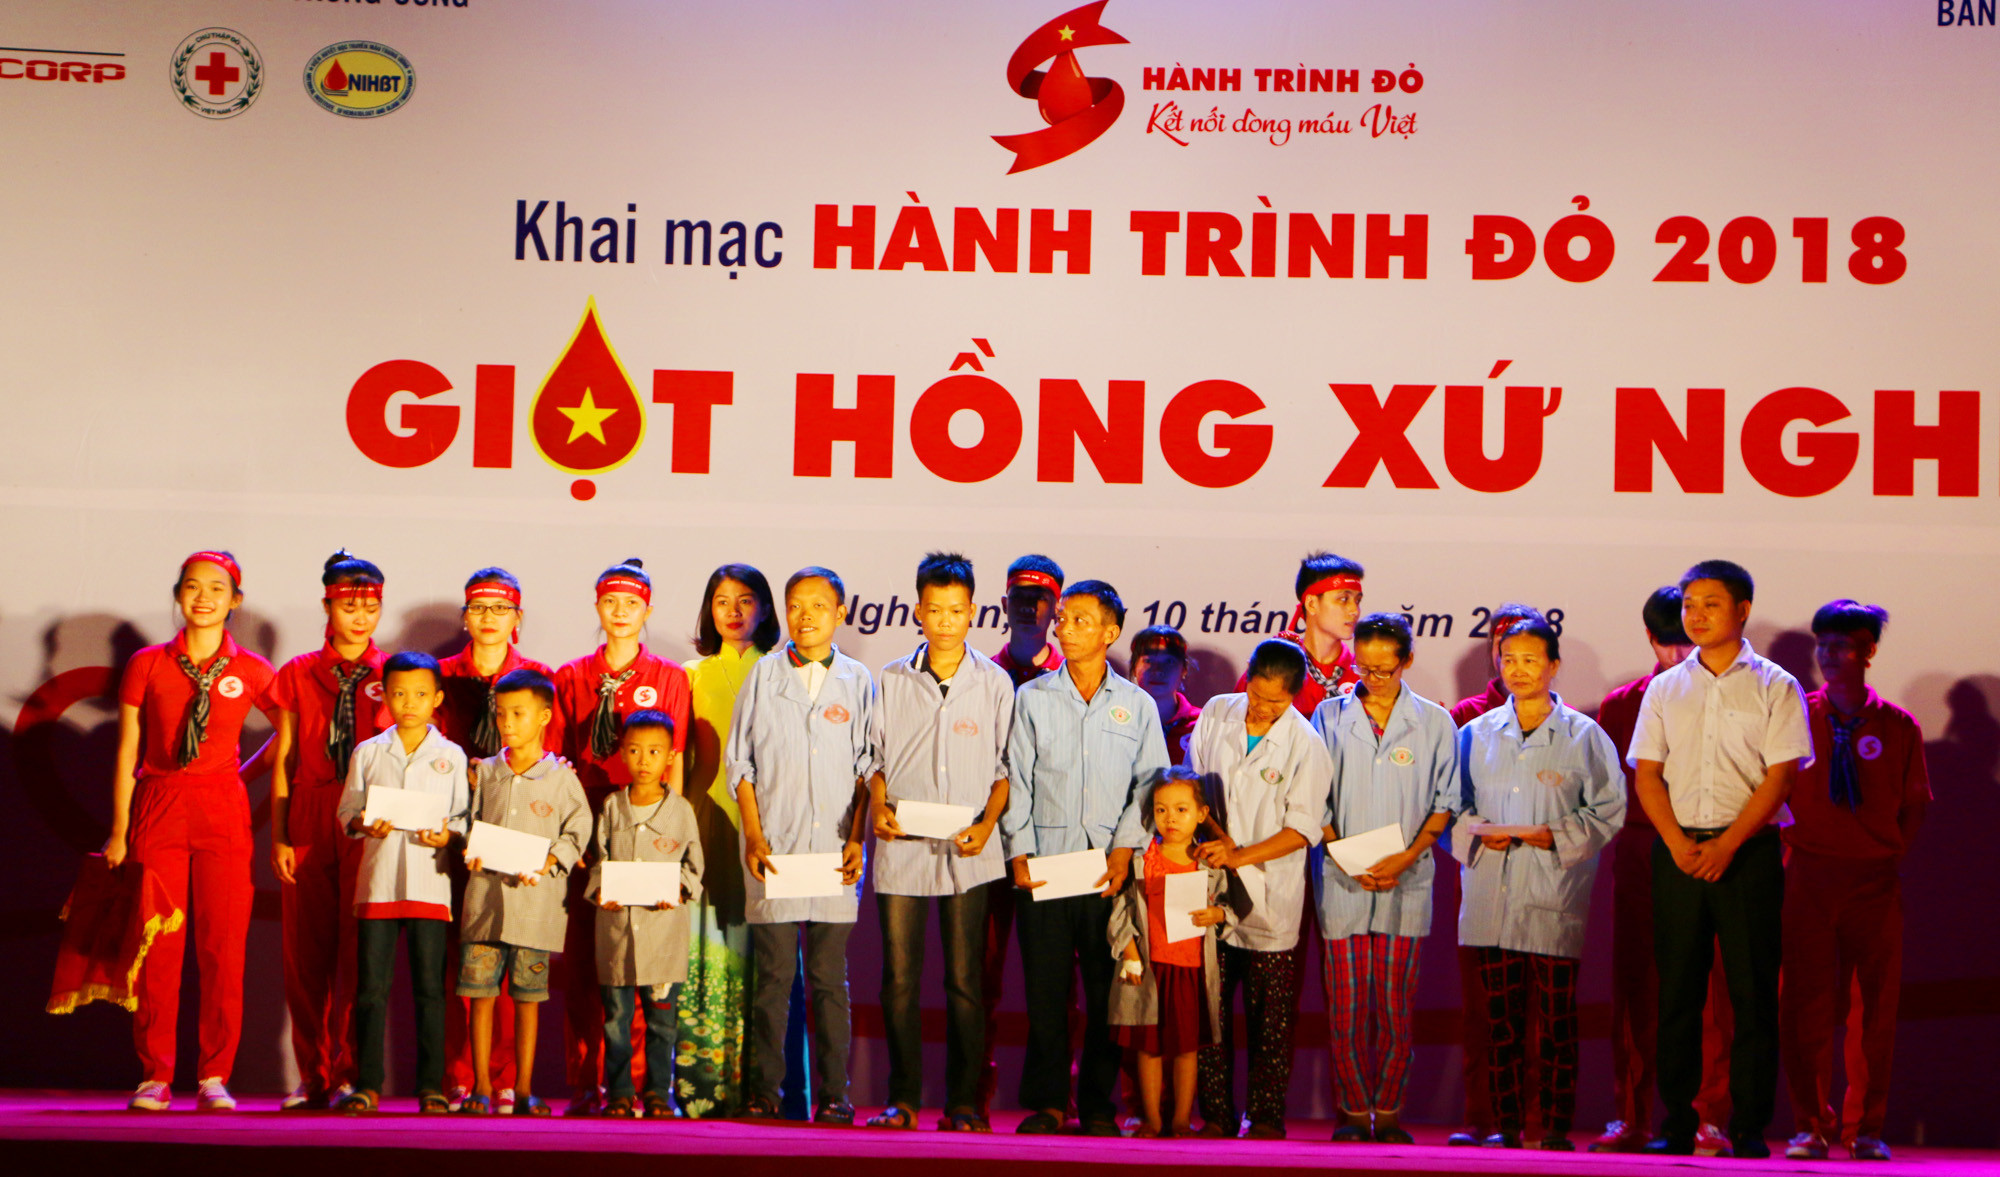 Ban tổ chức Chương trình Hành trình đỏ - Giọt hồng xứ Nghệ trao 10 suất quà cho 10 bệnh nhân bệnh máu có hoàn cảnh khó khăn tại Nghệ An. Ảnh: Nguyễn Hải